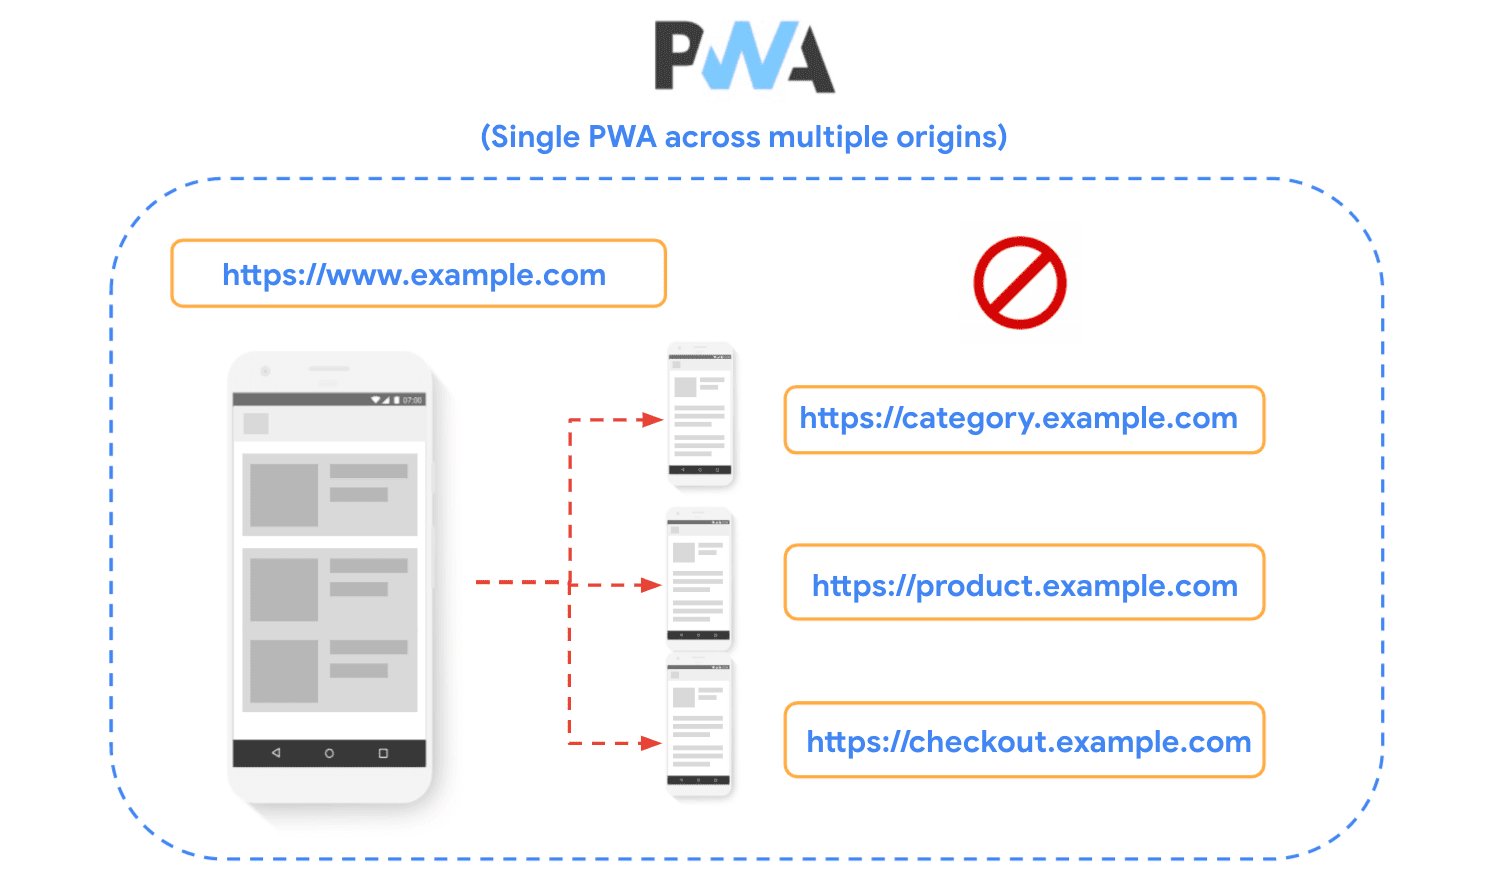 Sơ đồ cho thấy một trang web được chia thành nhiều nguồn gốc và cho thấy bạn không nên sử dụng kỹ thuật này khi tạo PWA.